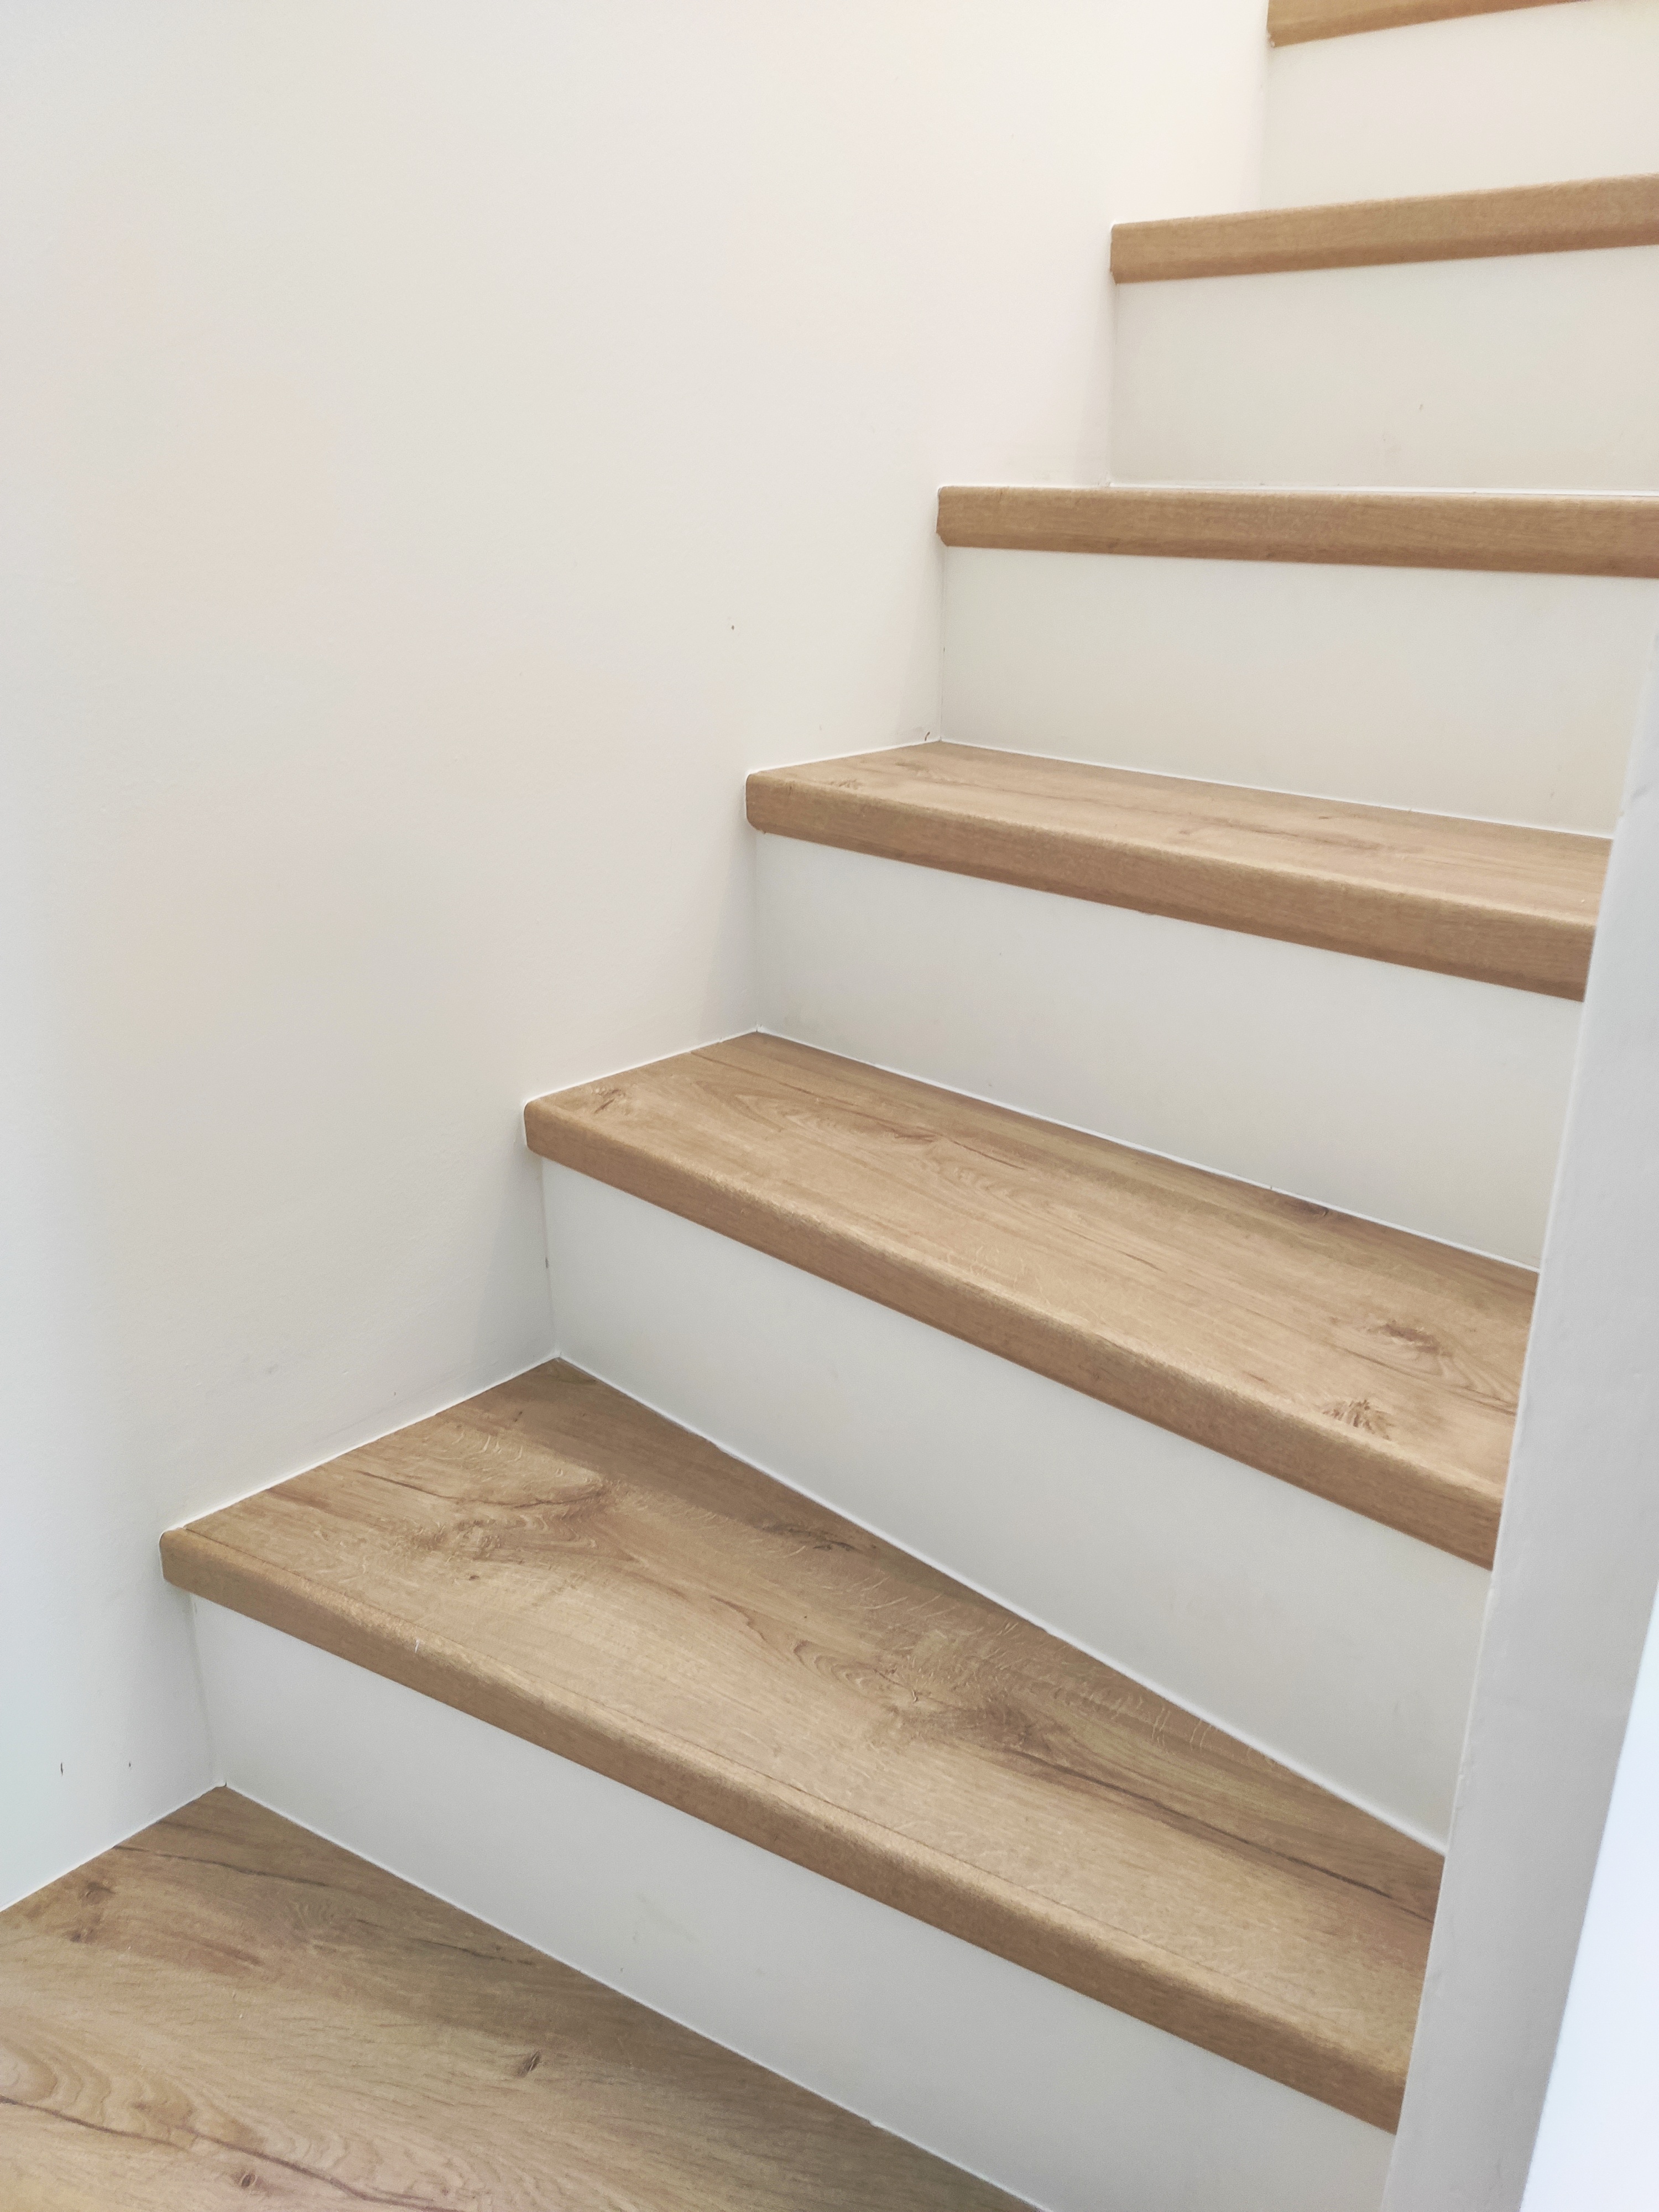 Azonos színkódú- QUICK Step padló, két lépcsőn, az eredmény 2 különböző stílusú lépcső.